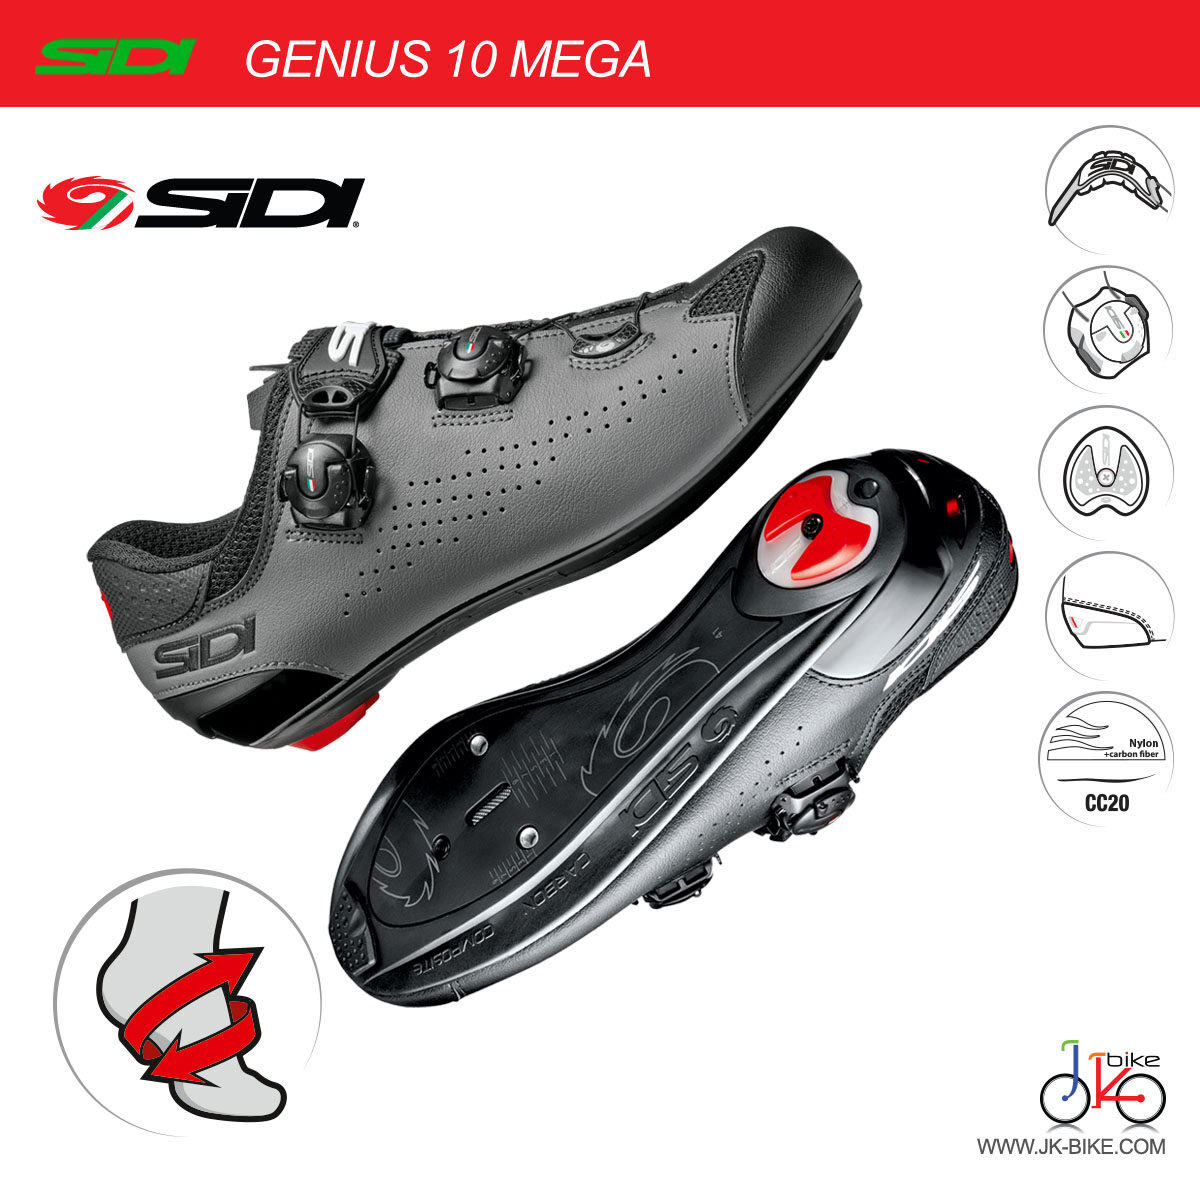 รองเท้าจักรยานเสือภูเขา SIDI MTB EAGLE 10 CYCLING SHOES | Lazada.co.th